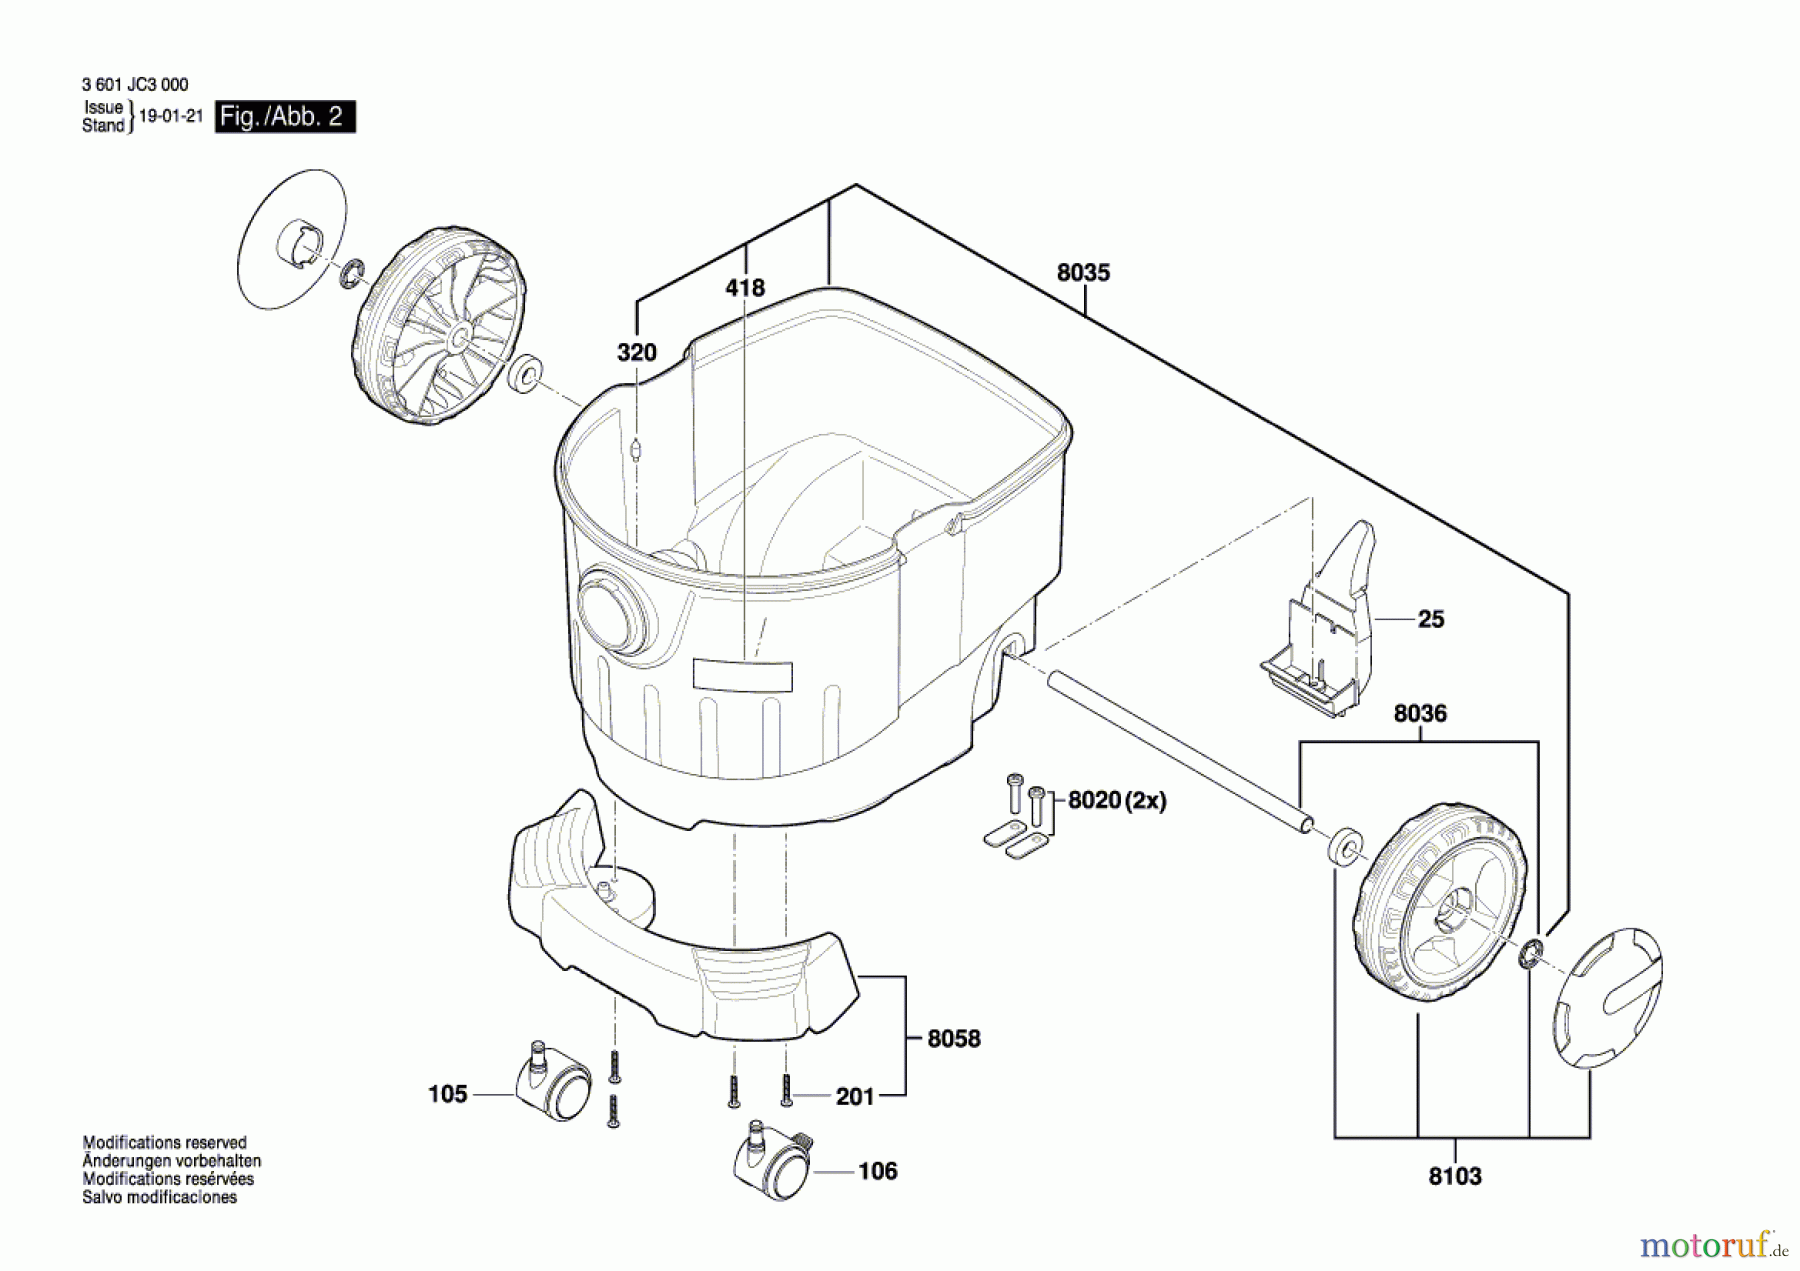  Bosch Werkzeug Allzwecksauger GAS 35 L SFC Seite 2